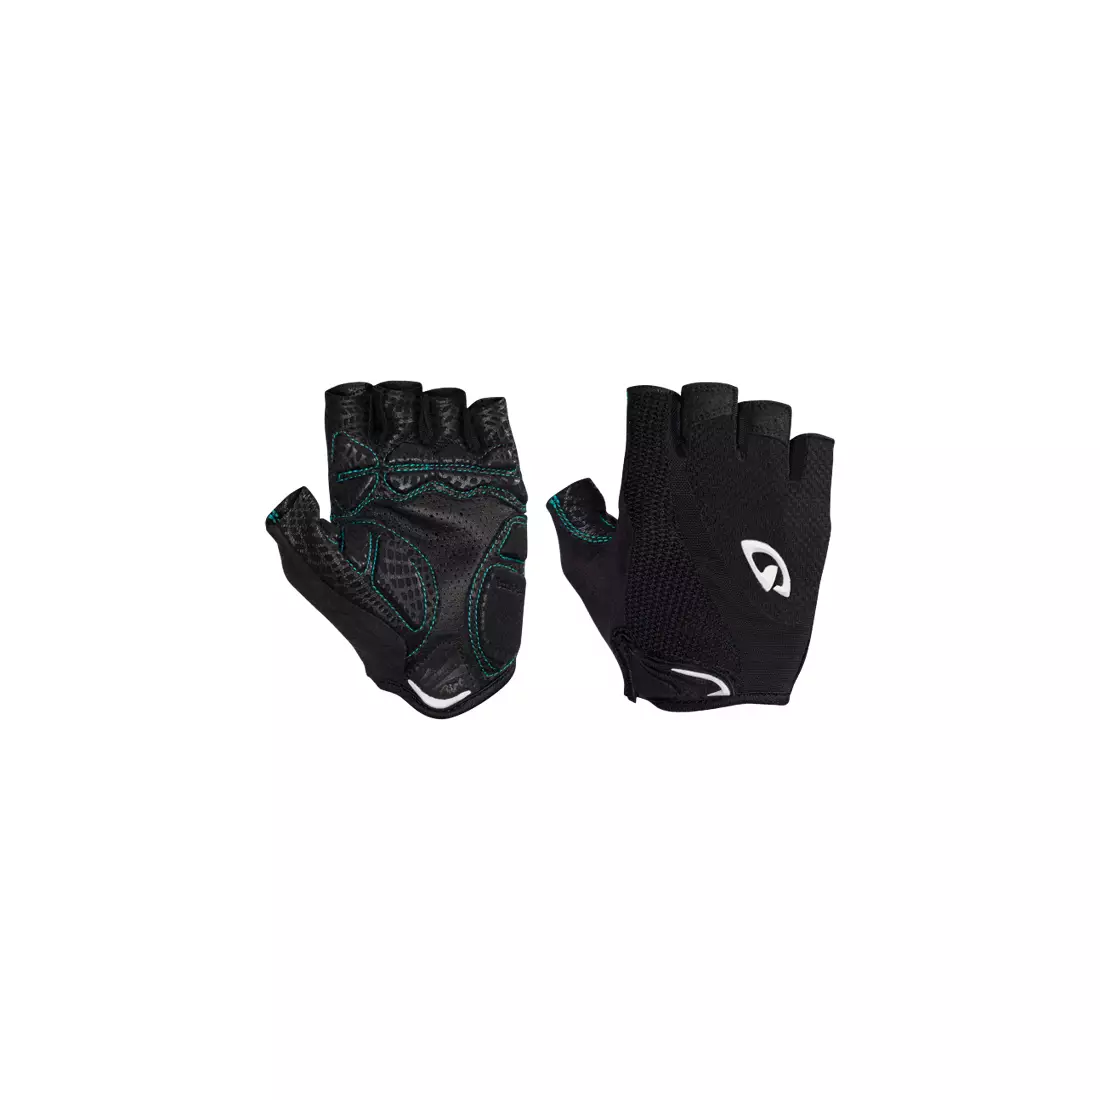 GIRO MONICA women's cycling gloves, black